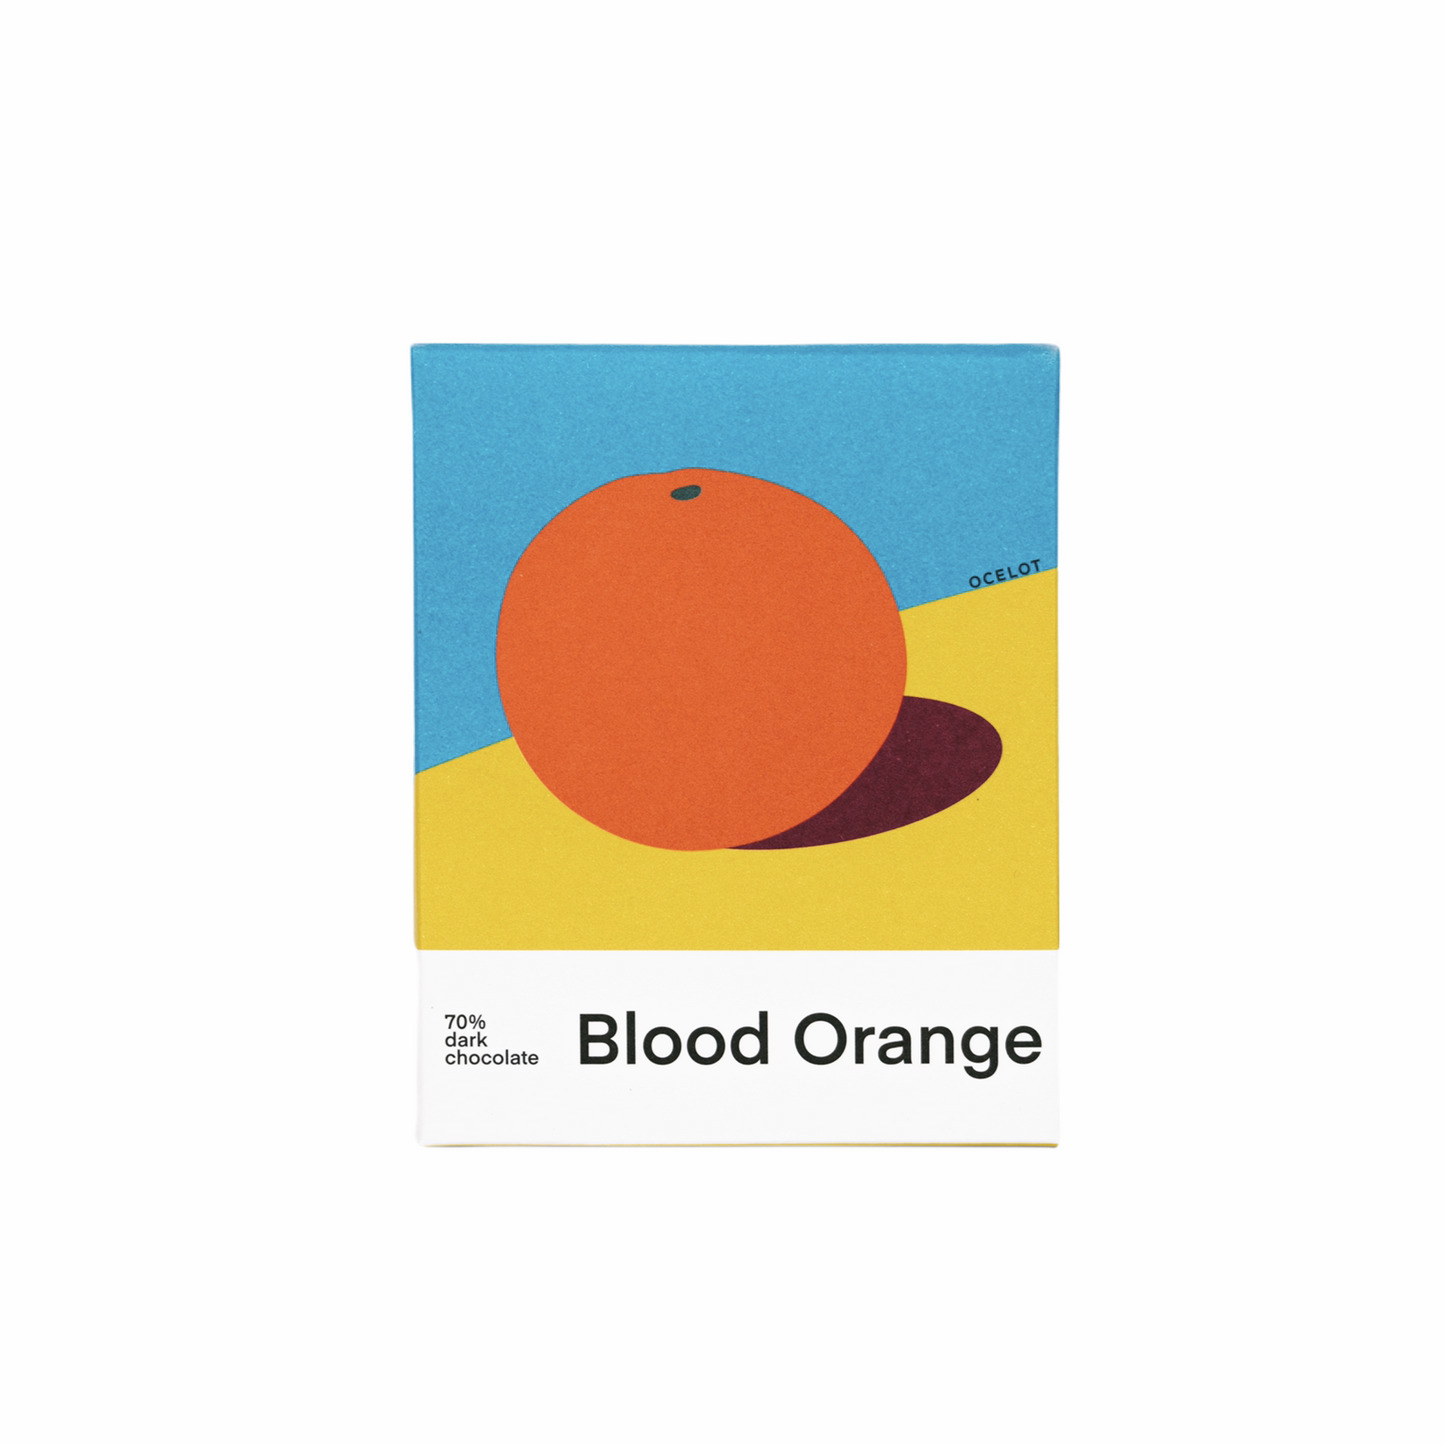 Blood Orange by Ocelot